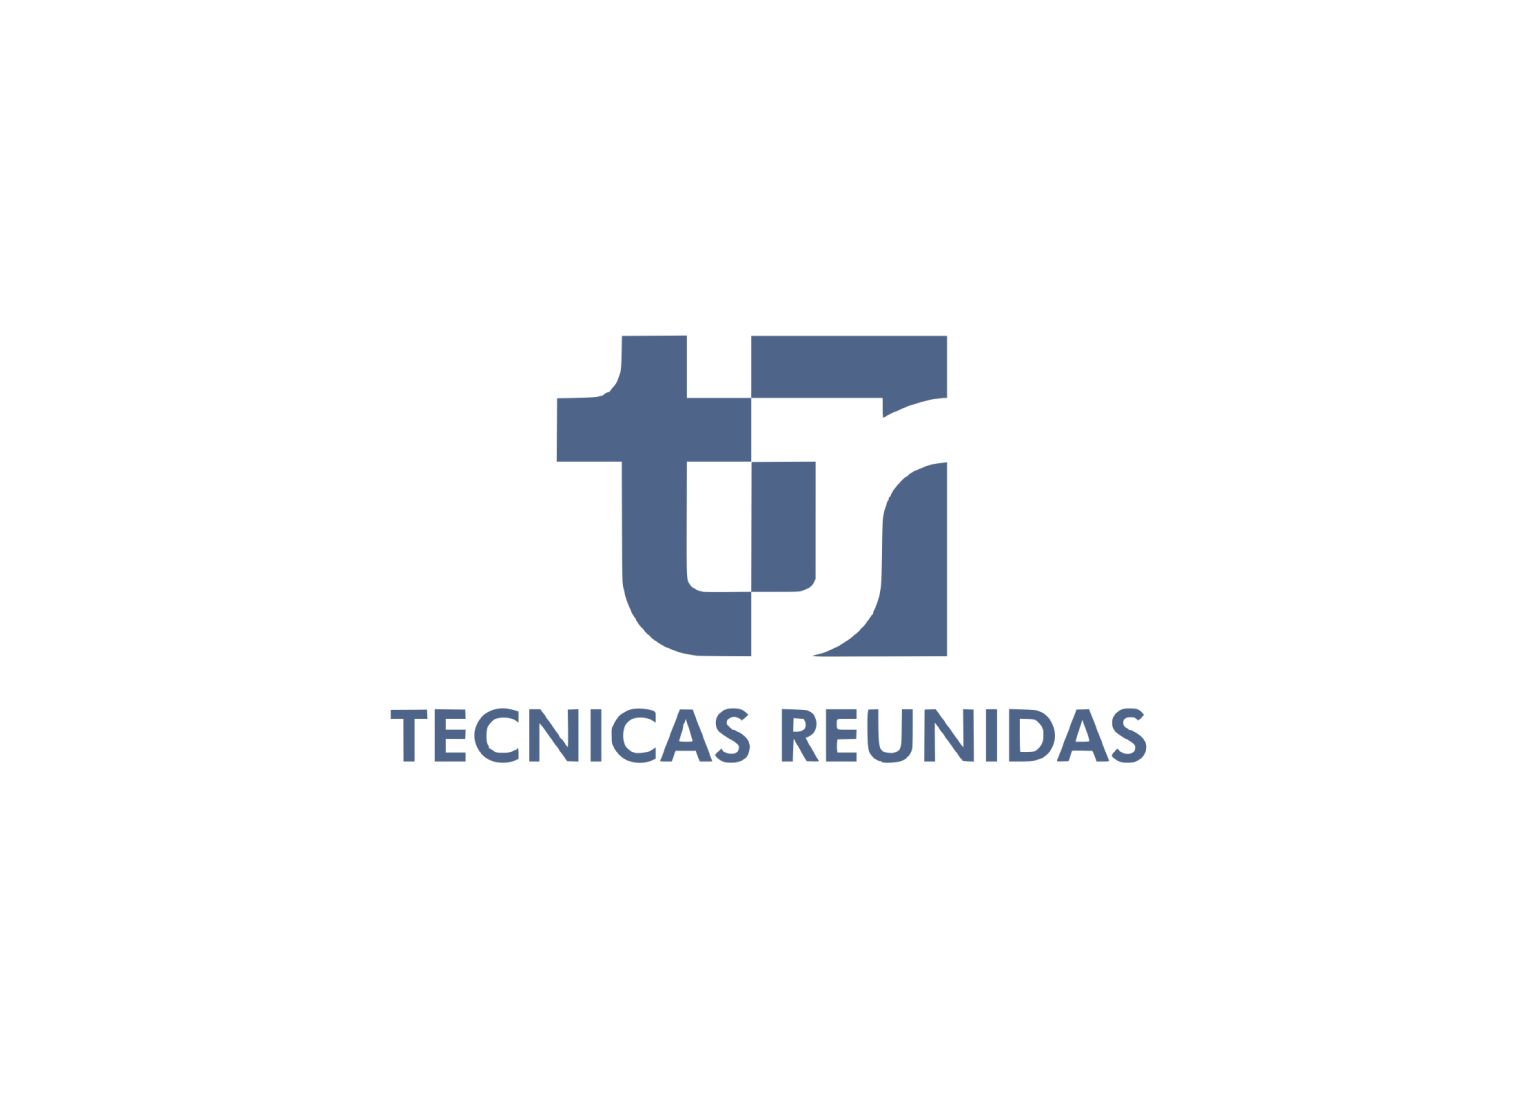 TECNICAS REUNIDAS